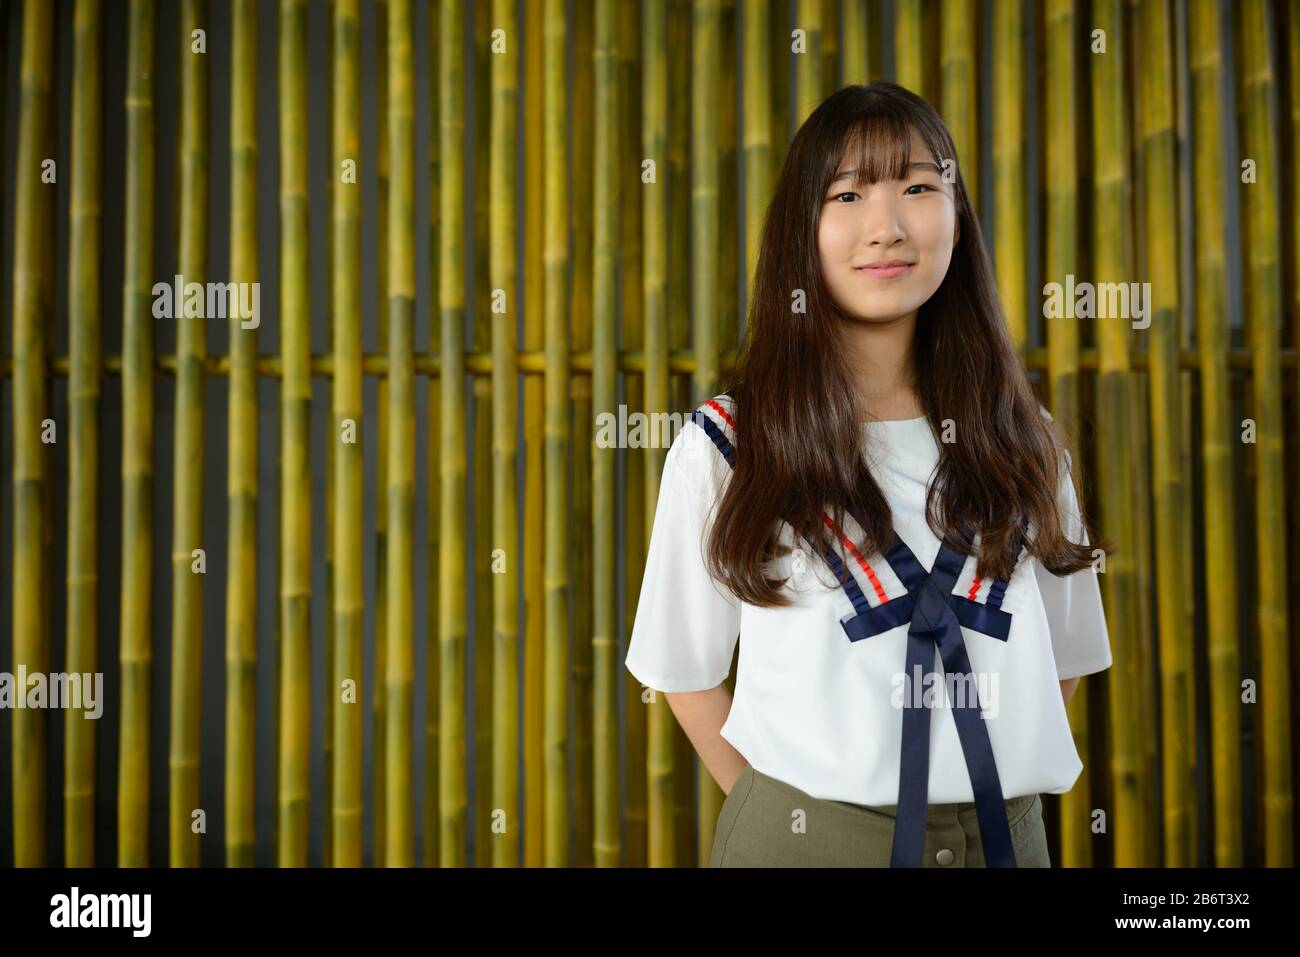 Junge schöne asiatische Teenager-Mädchen gegen Bambuszaun Stockfoto